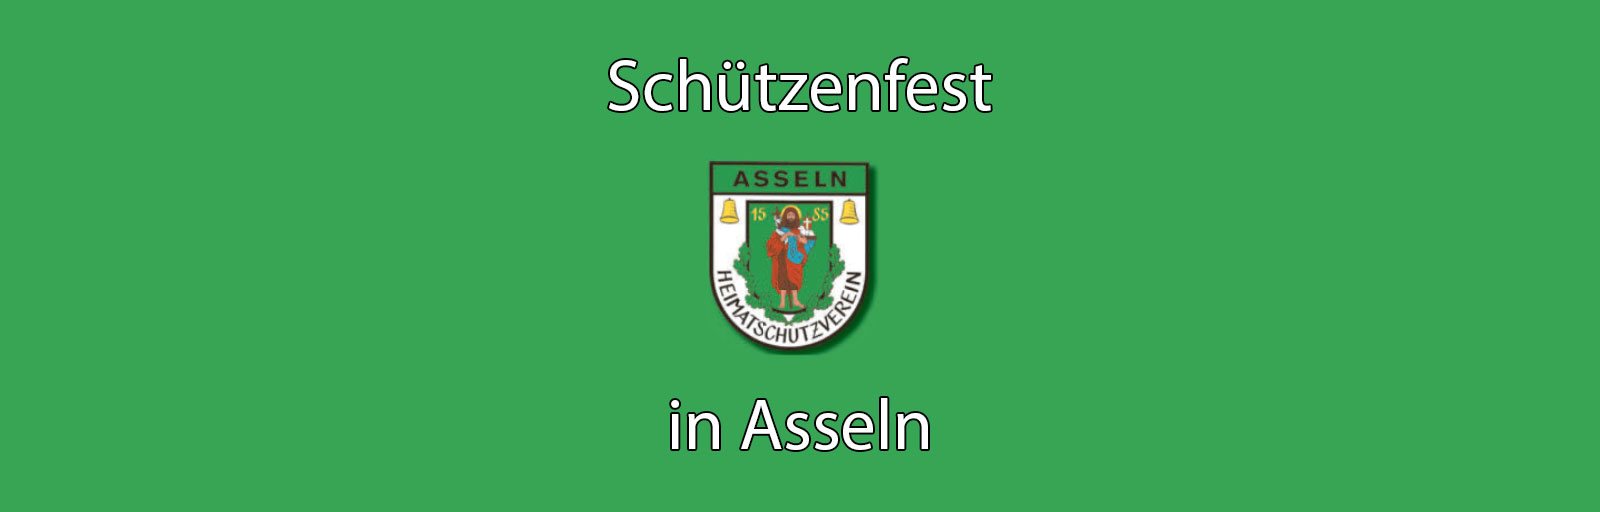 Schützenfest in Asseln am Wochenende